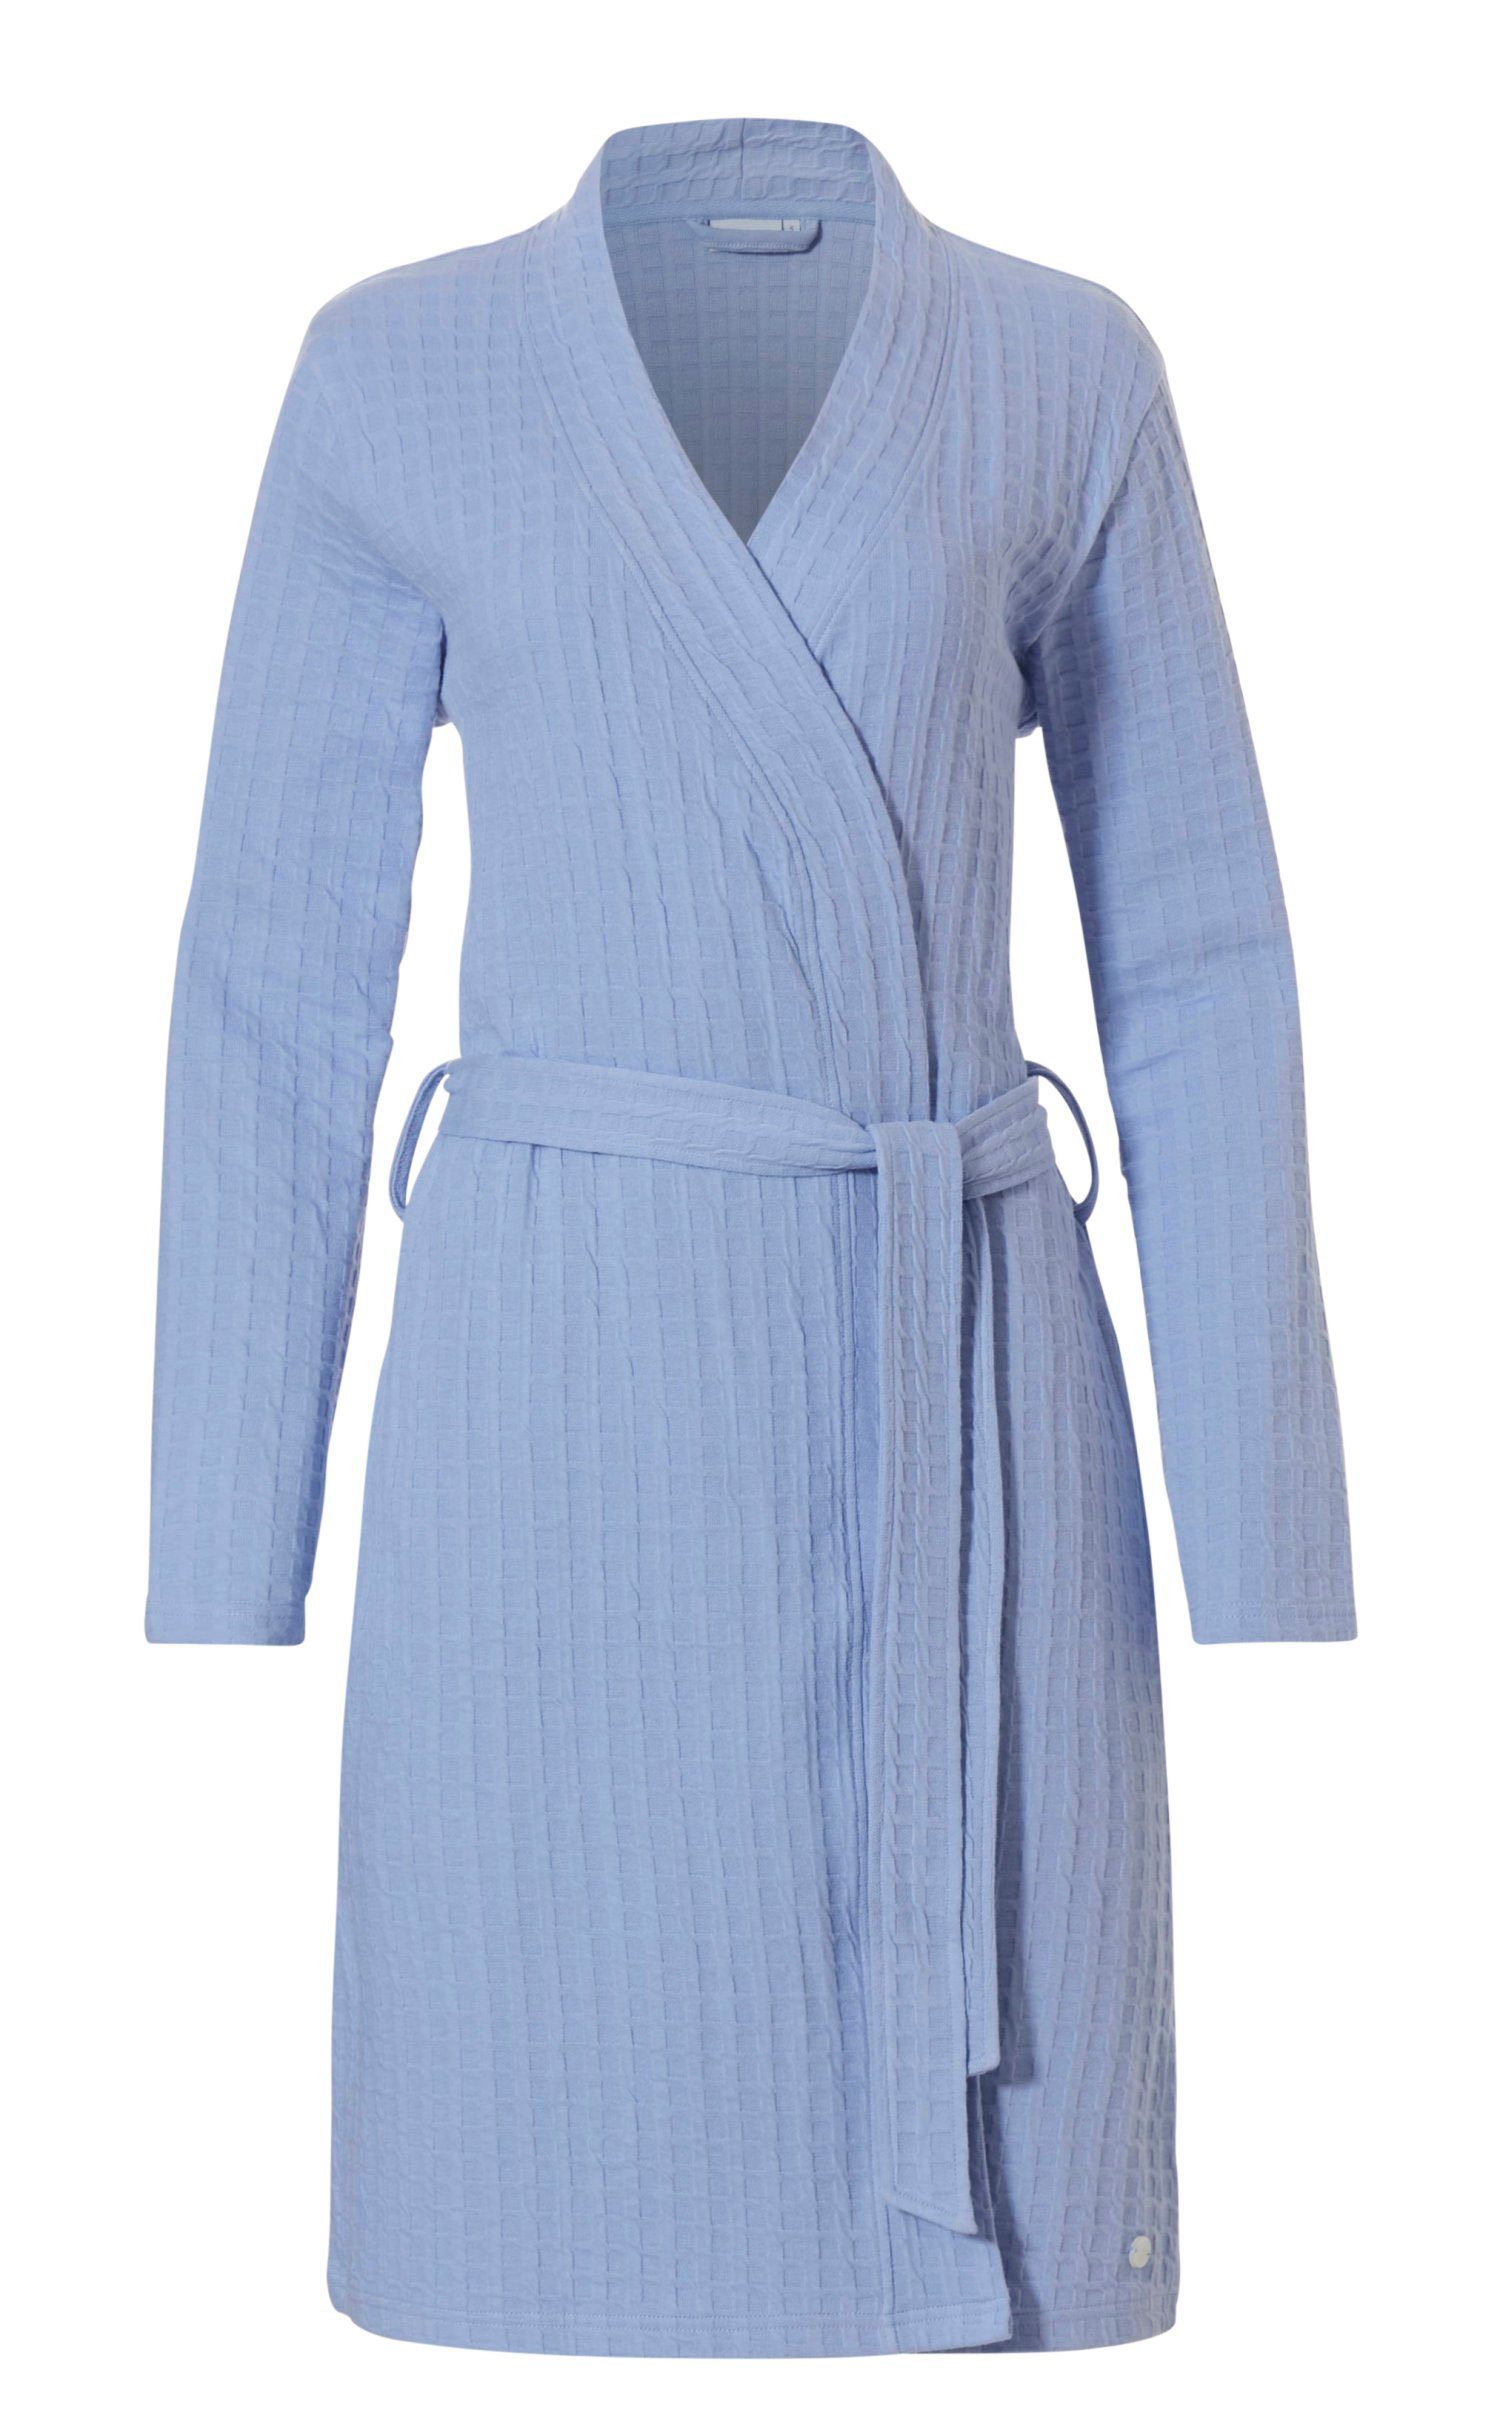 Baumwollmischung, Design Modisches Kimono-Kragen, Morgenmantel Form, Kimono Gürtel, kurz, Pastunette light Morgenmantel blue Damen